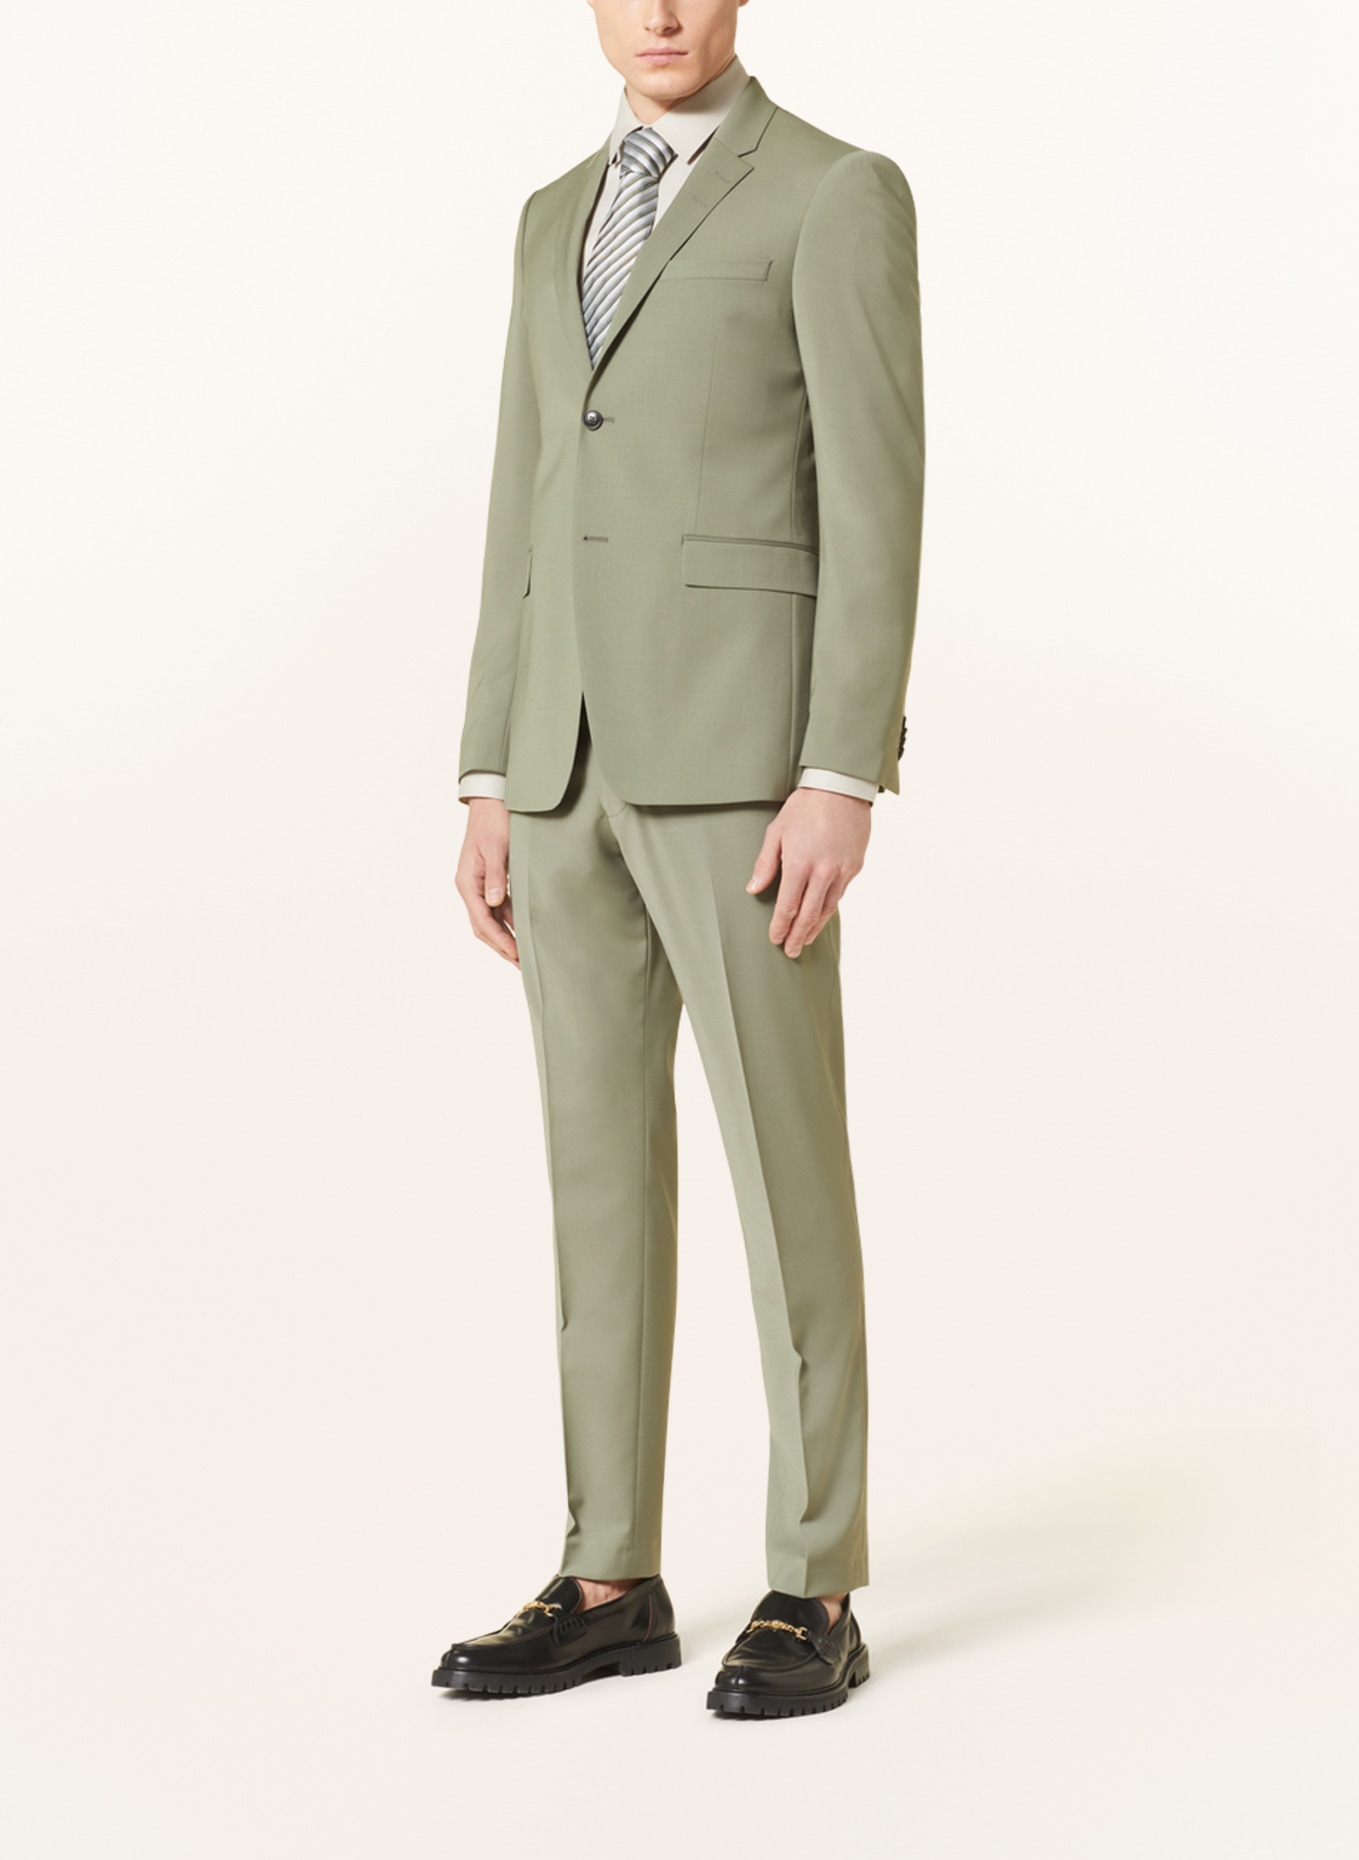 TIGER OF SWEDEN Suit jacket JERRETTS extra slim fit, Color: 46B Uniform Green (Image 2)